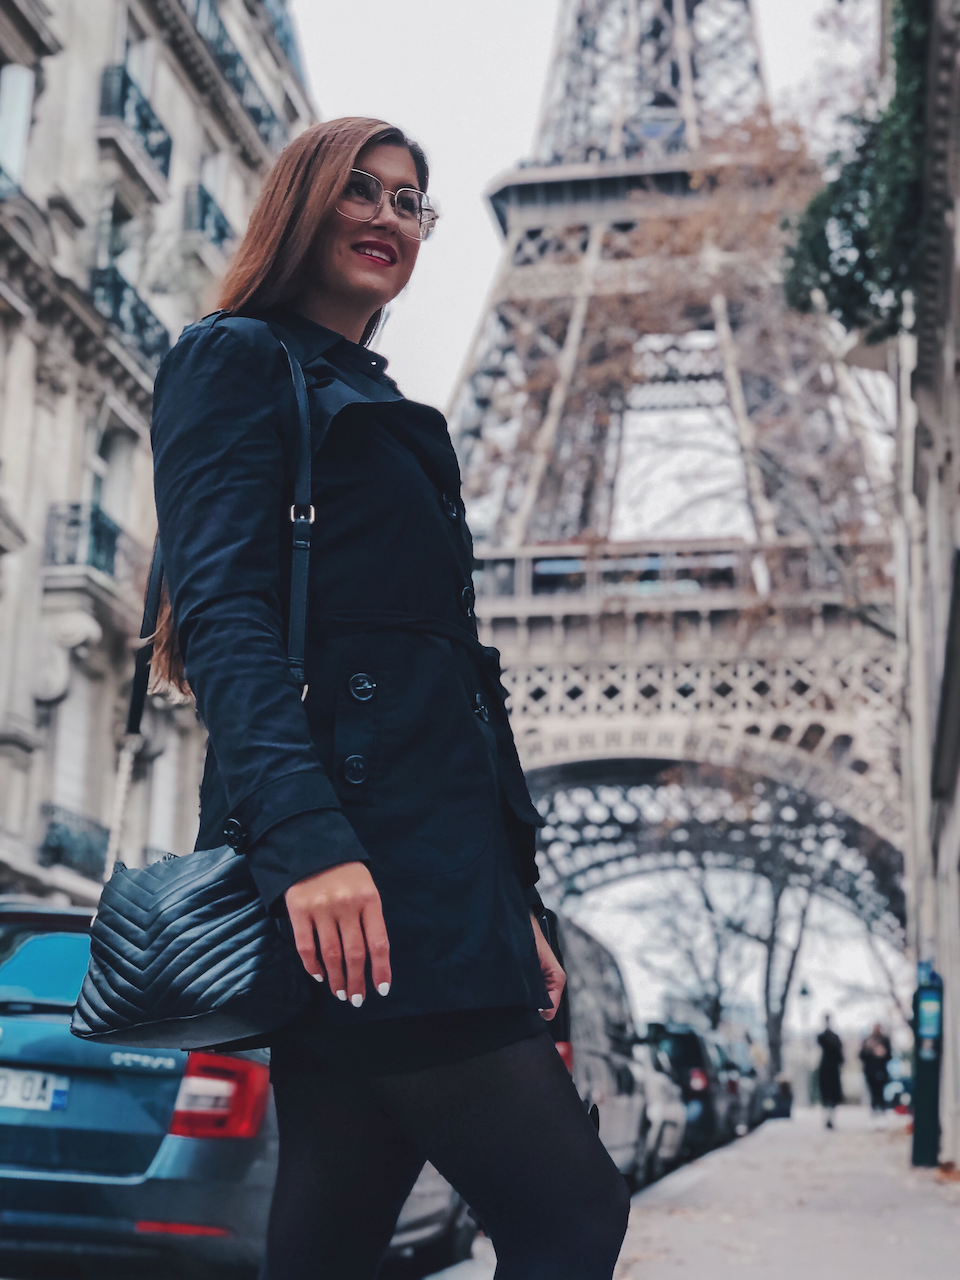 Une femme posant devant la tour Eiffel - Paris - France